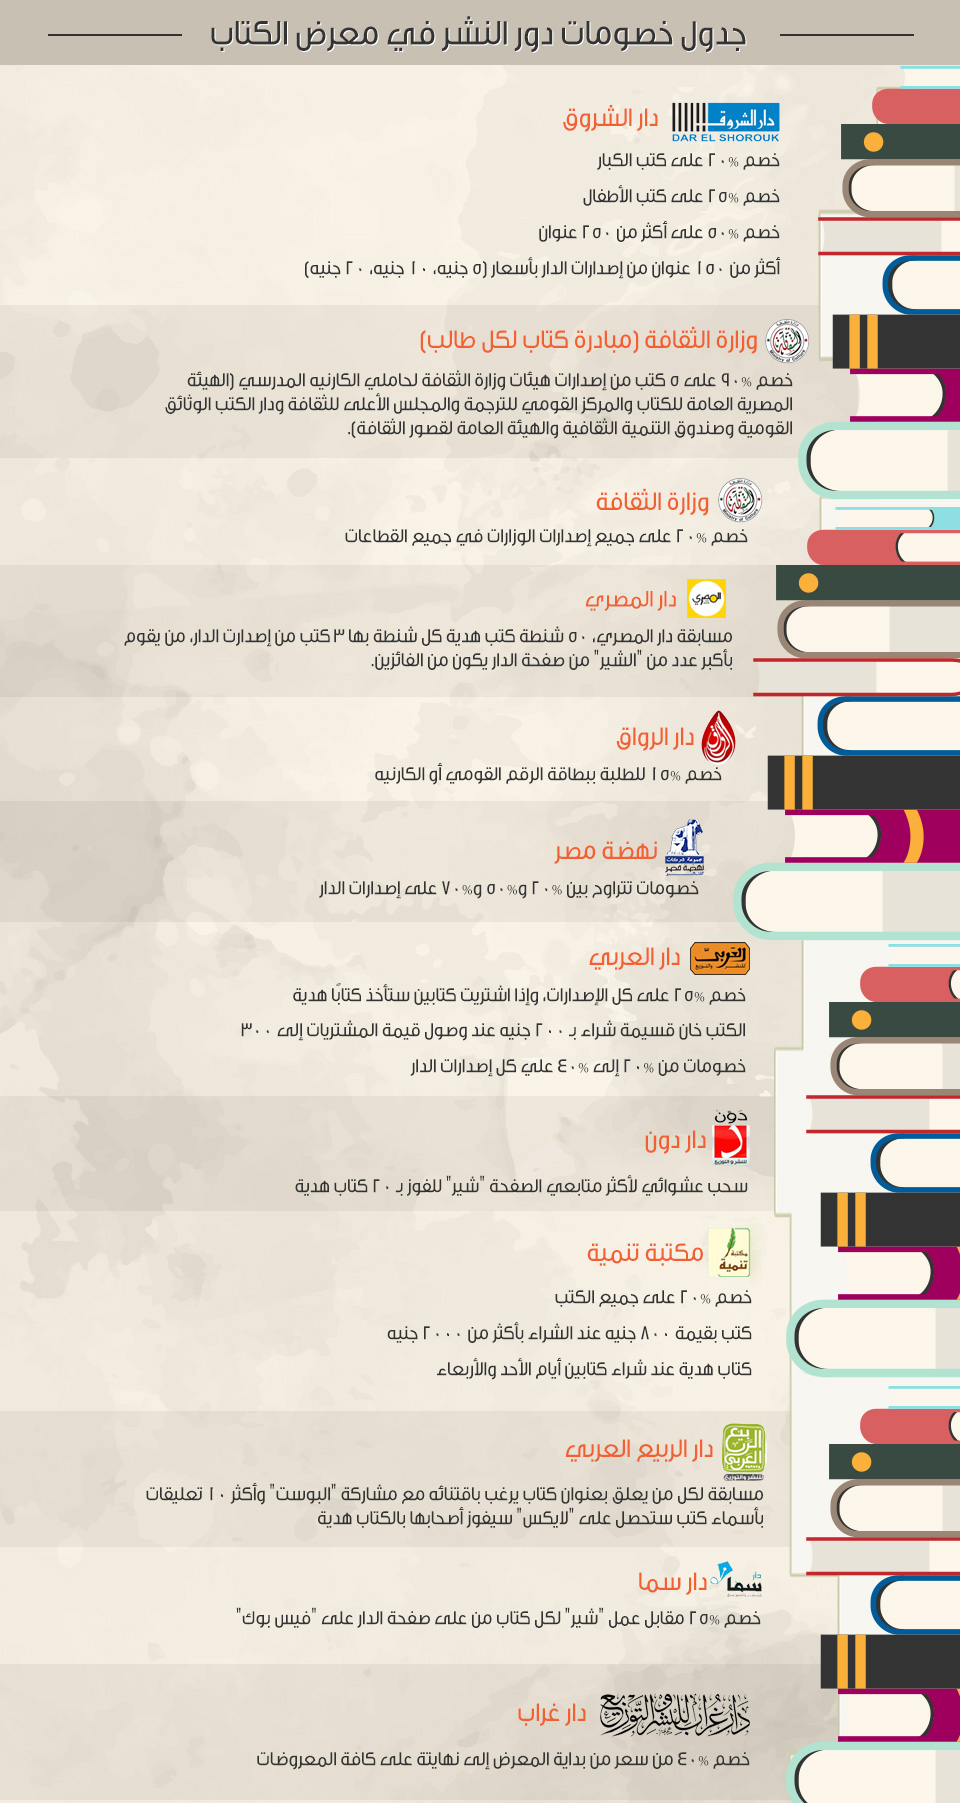 جدول خصومات دور النشر في معرض الكتاب